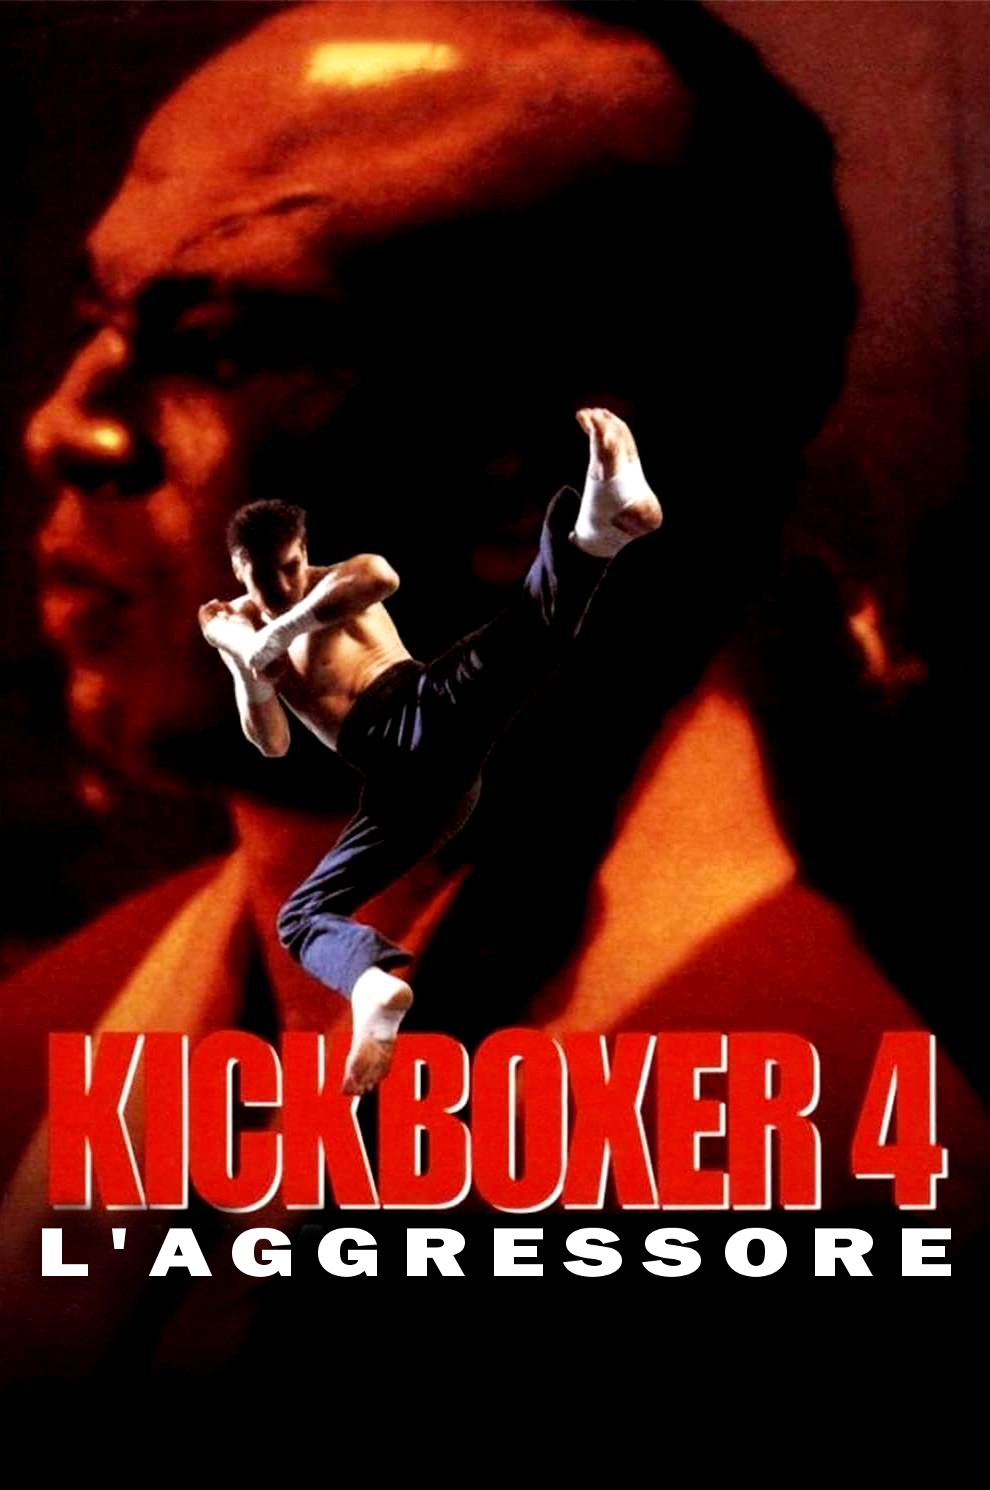 Kickboxer 4 – L’aggressore [HD] (1994)